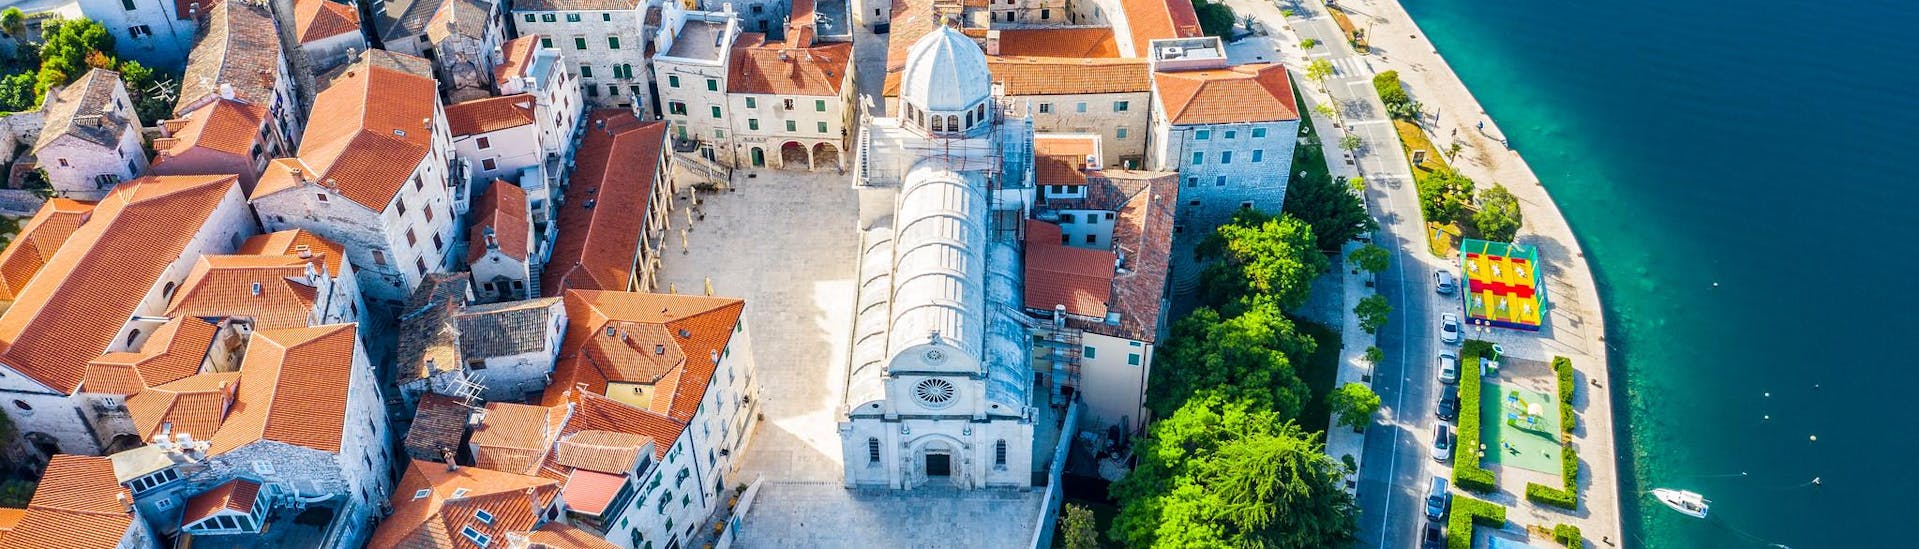 Vista aérea de la ciudad de Sibenik, en Croacia.